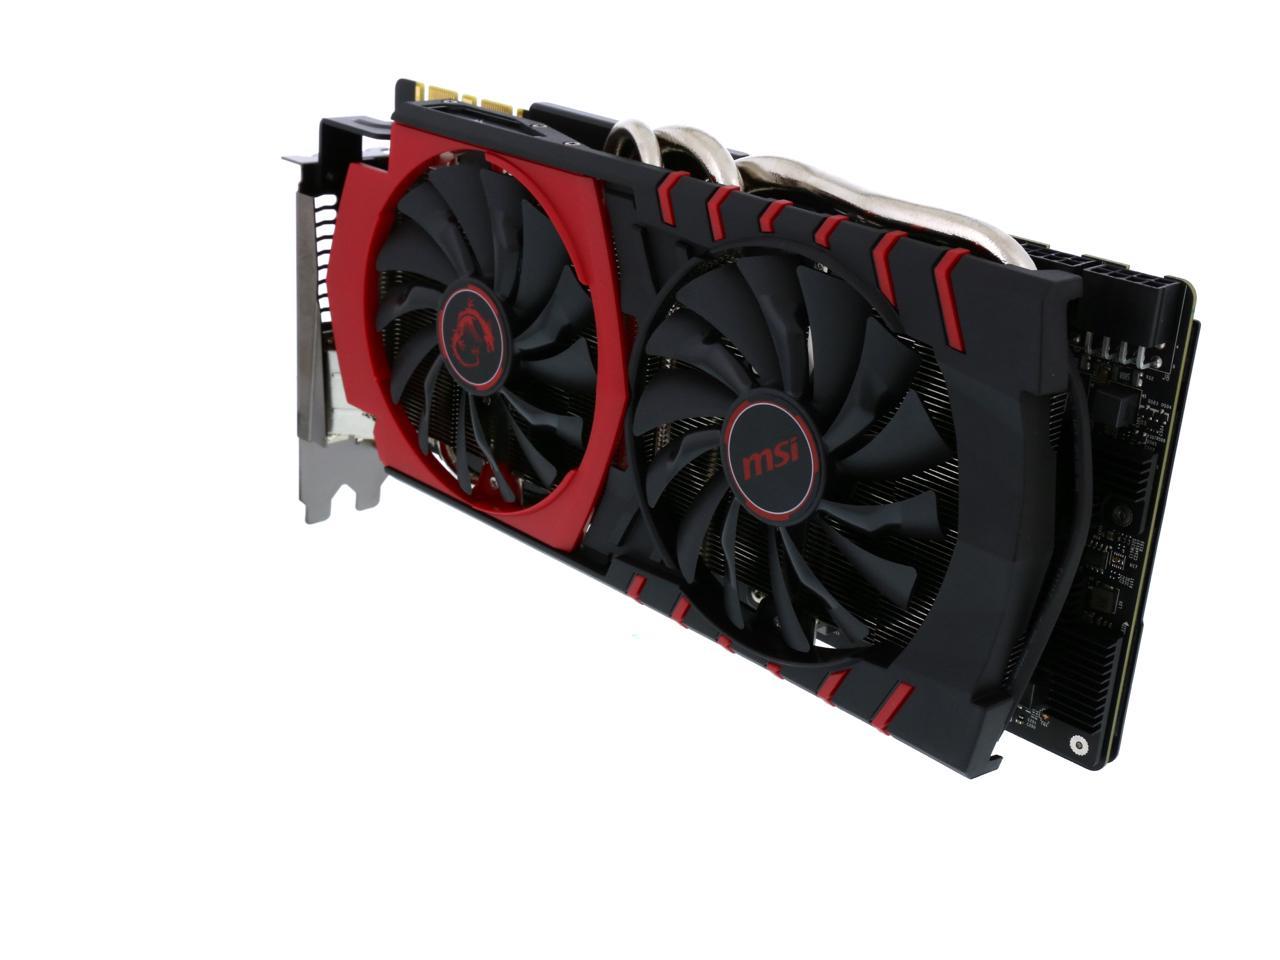 MSI GeForce GTX 980 Ti GAMING 6G - Newegg.com